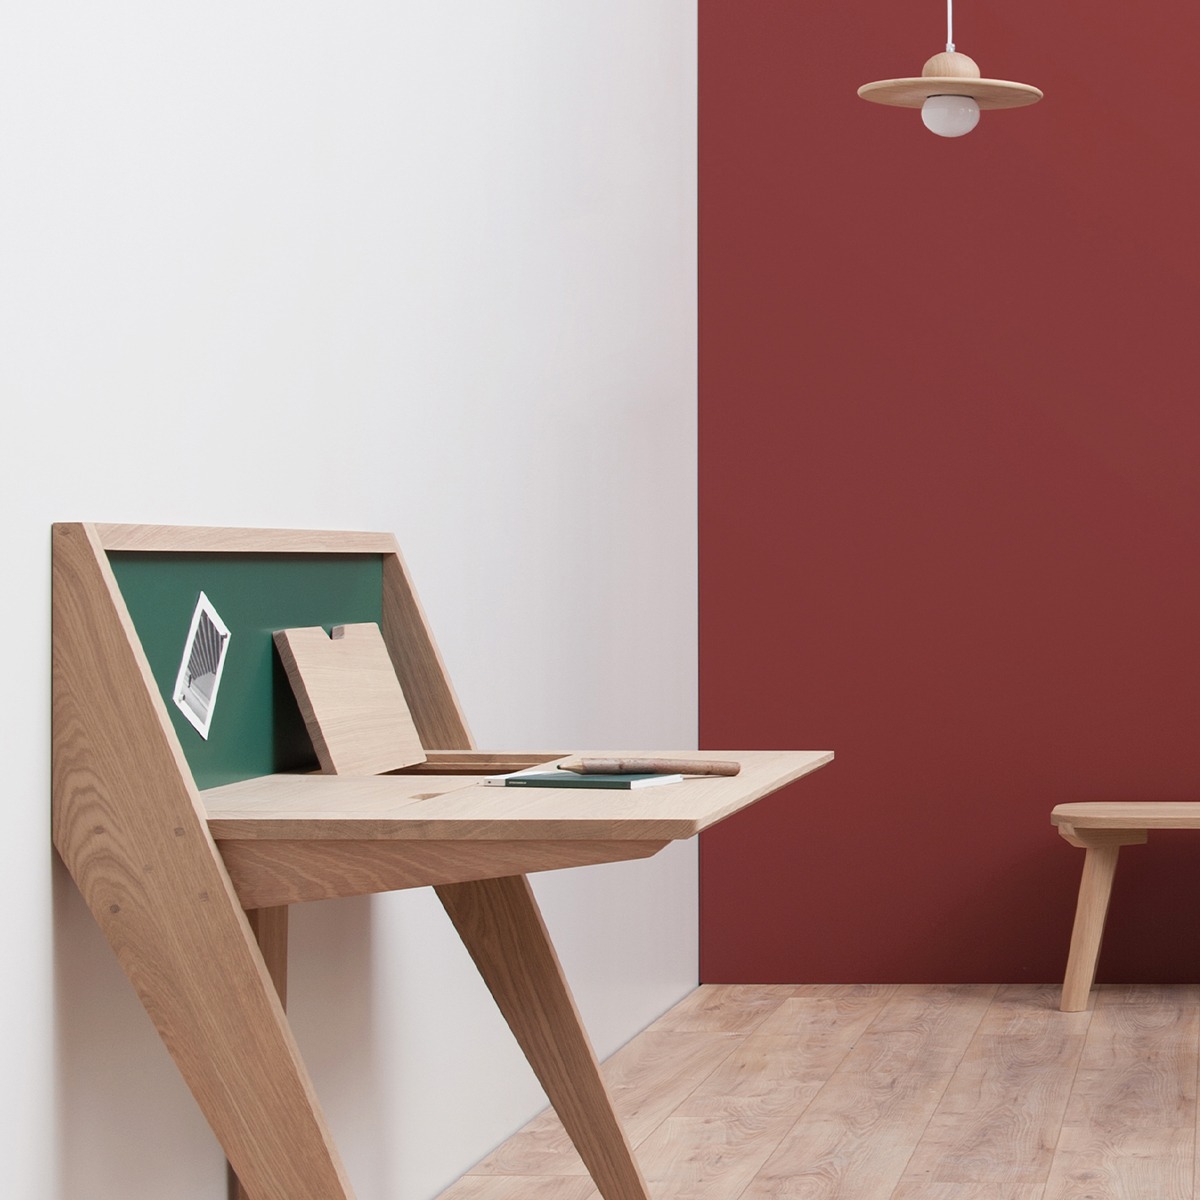 bureau contemporain design tripode Compas salon mur terracotta tendance déco scandinave rouge brique